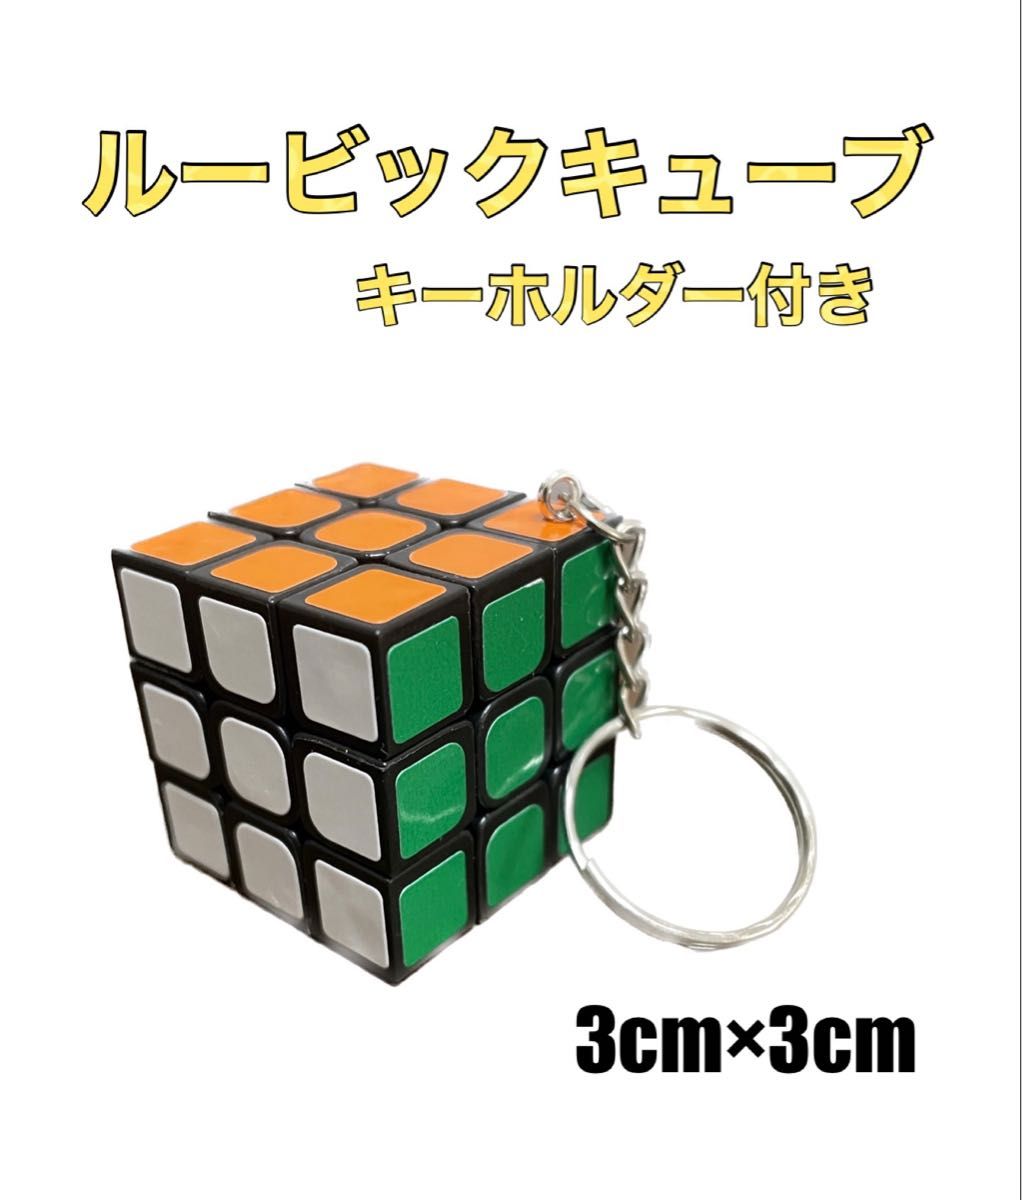 新品ルービックキューブMONSTER GO MG3 V2 EDU磁石